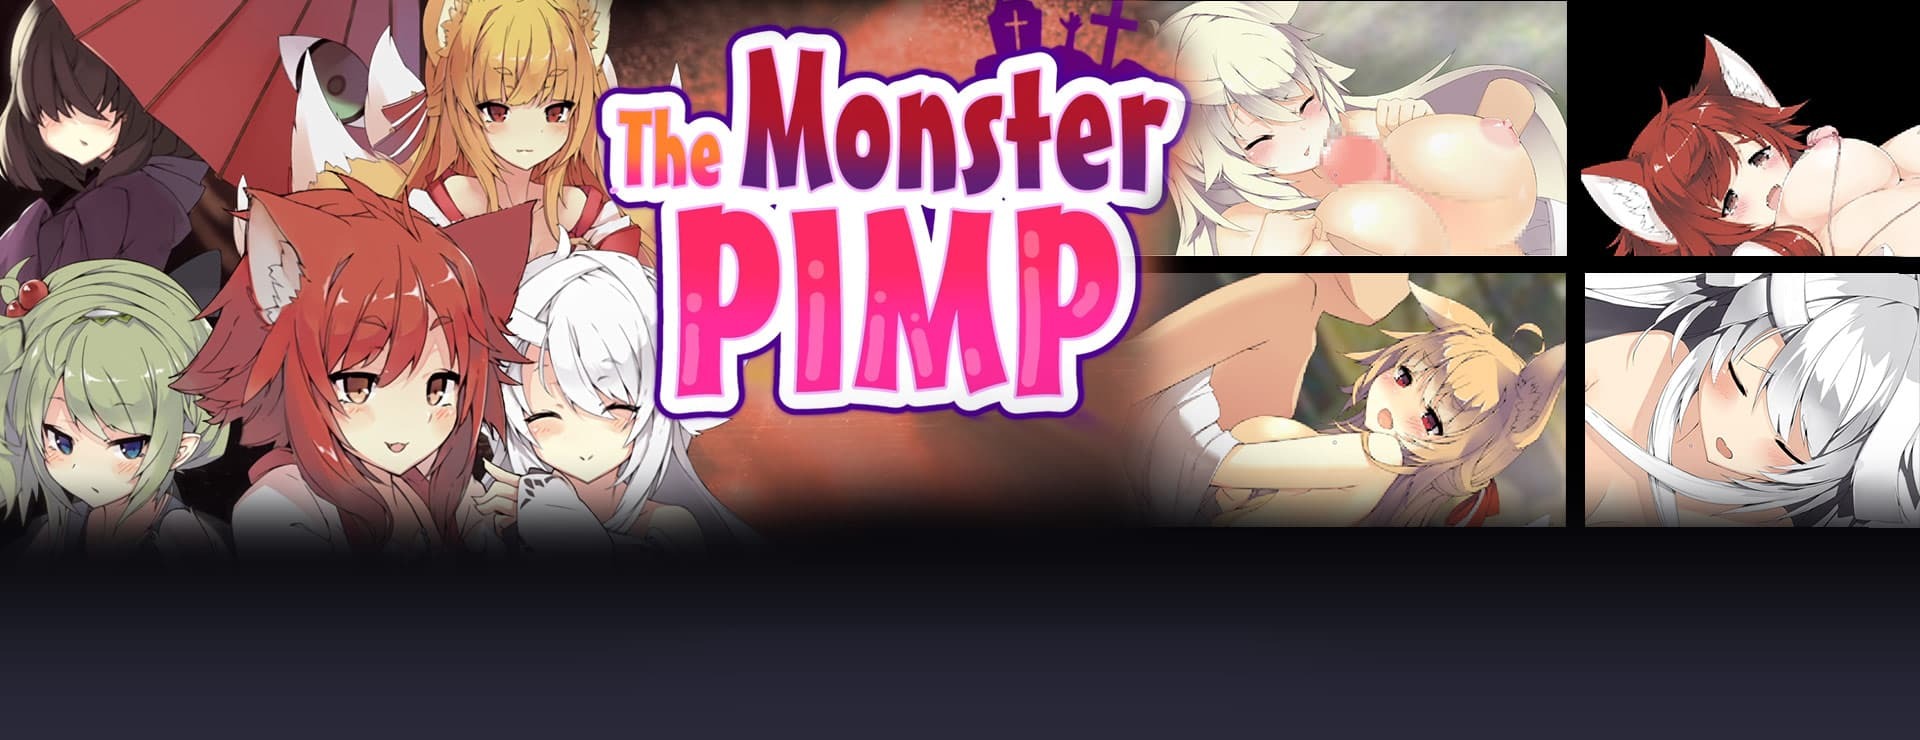 The Monster PIMP - RPG Gra